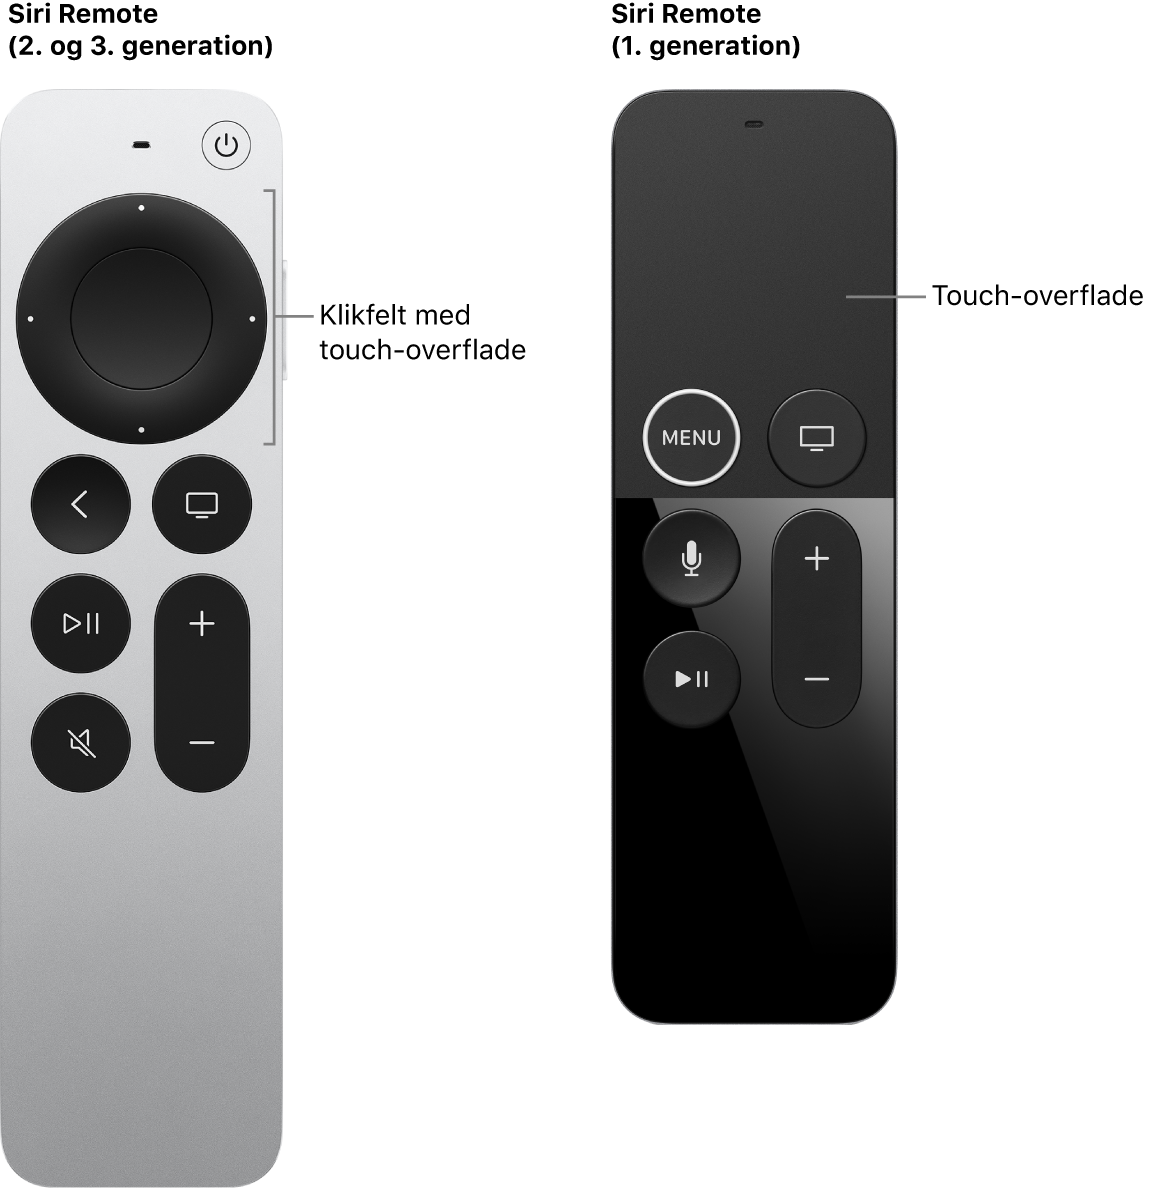 Siri Remote (2. generation og 3. generation) med klikfelt og Siri Remote (1. generation) med touch-overflade